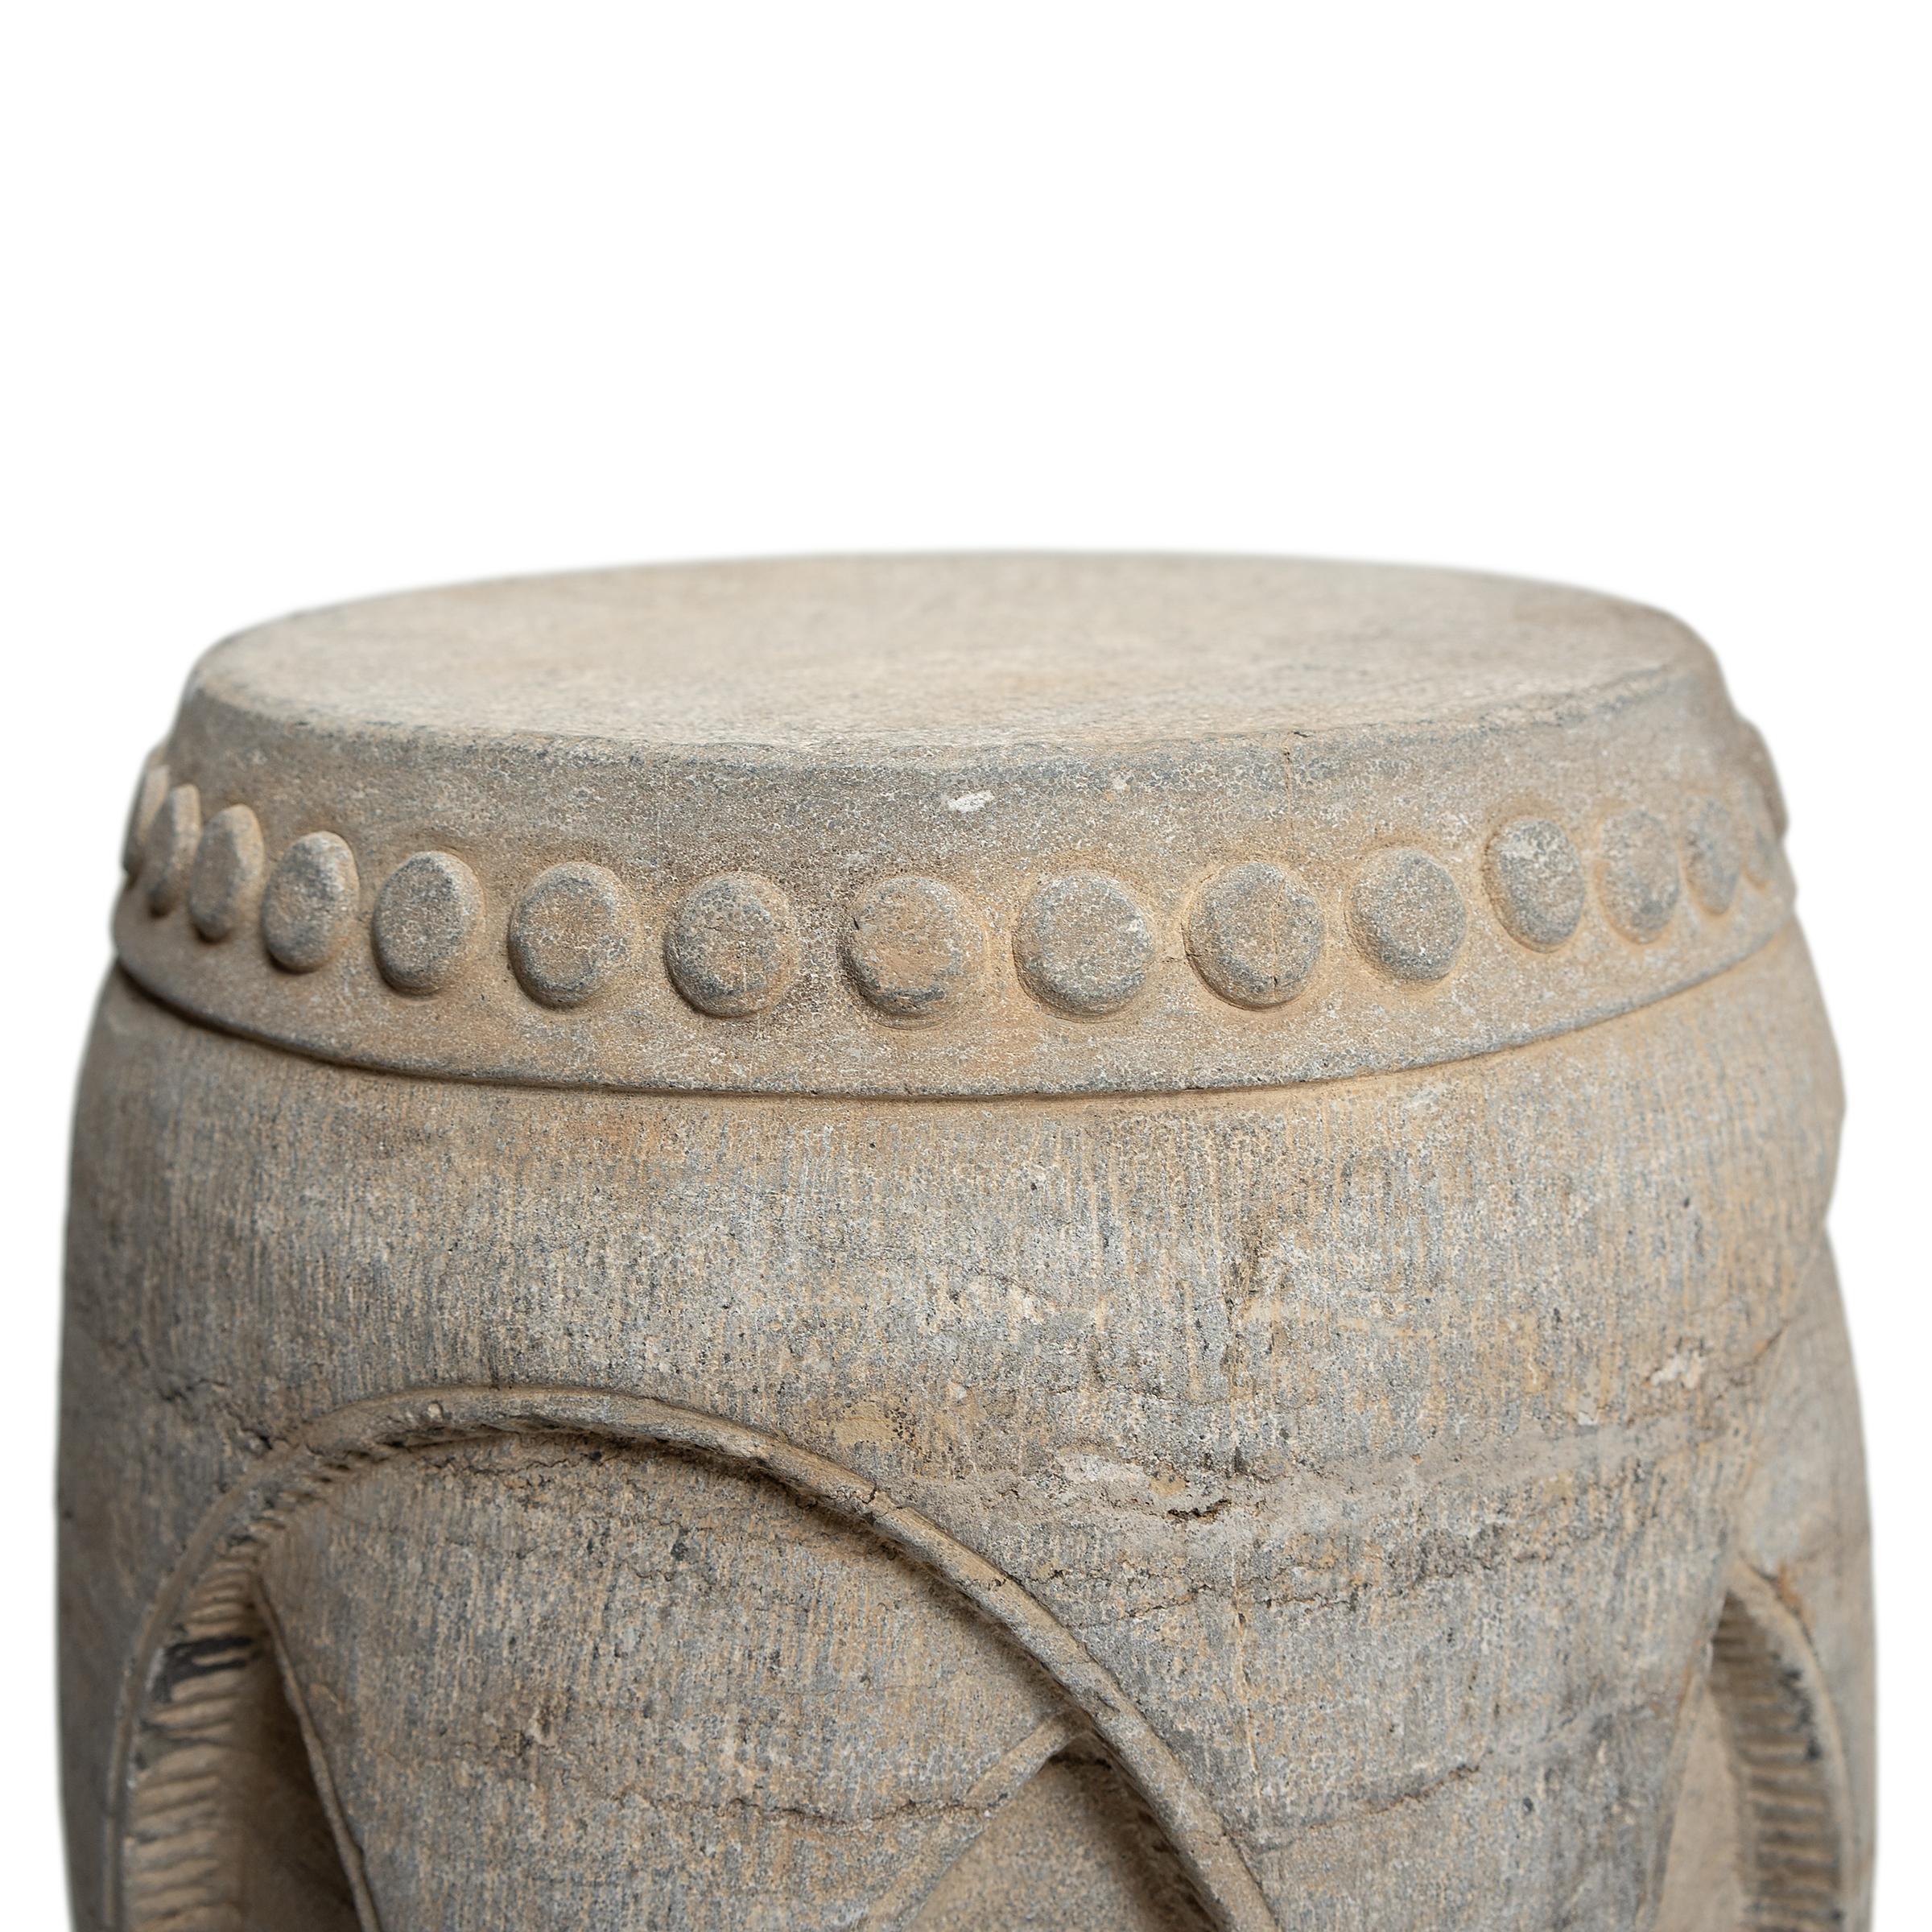 Qing Chinese Interlocking Stone Drum, c. 1900